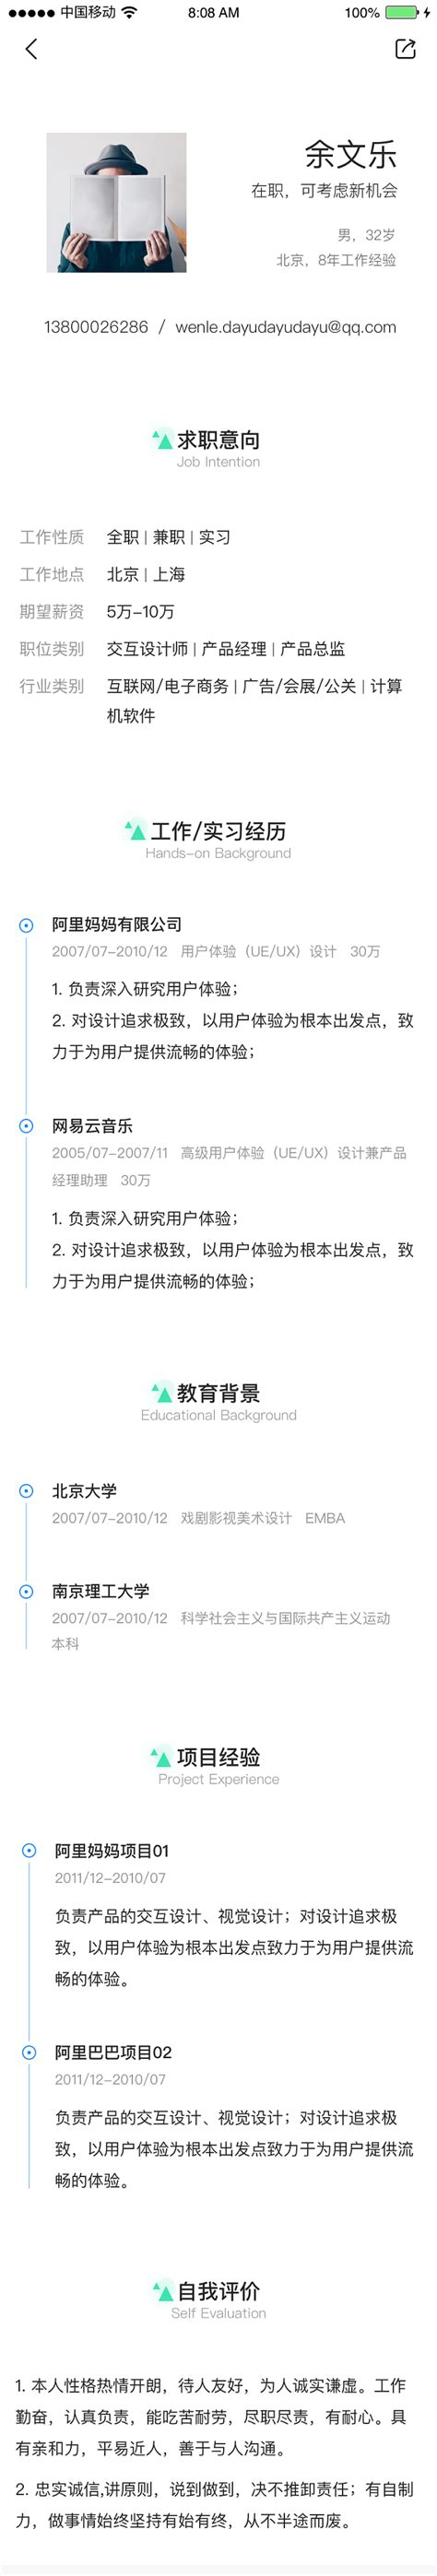 智联招聘：2022年第四季度中国企业招聘薪酬报告 | 先导研报